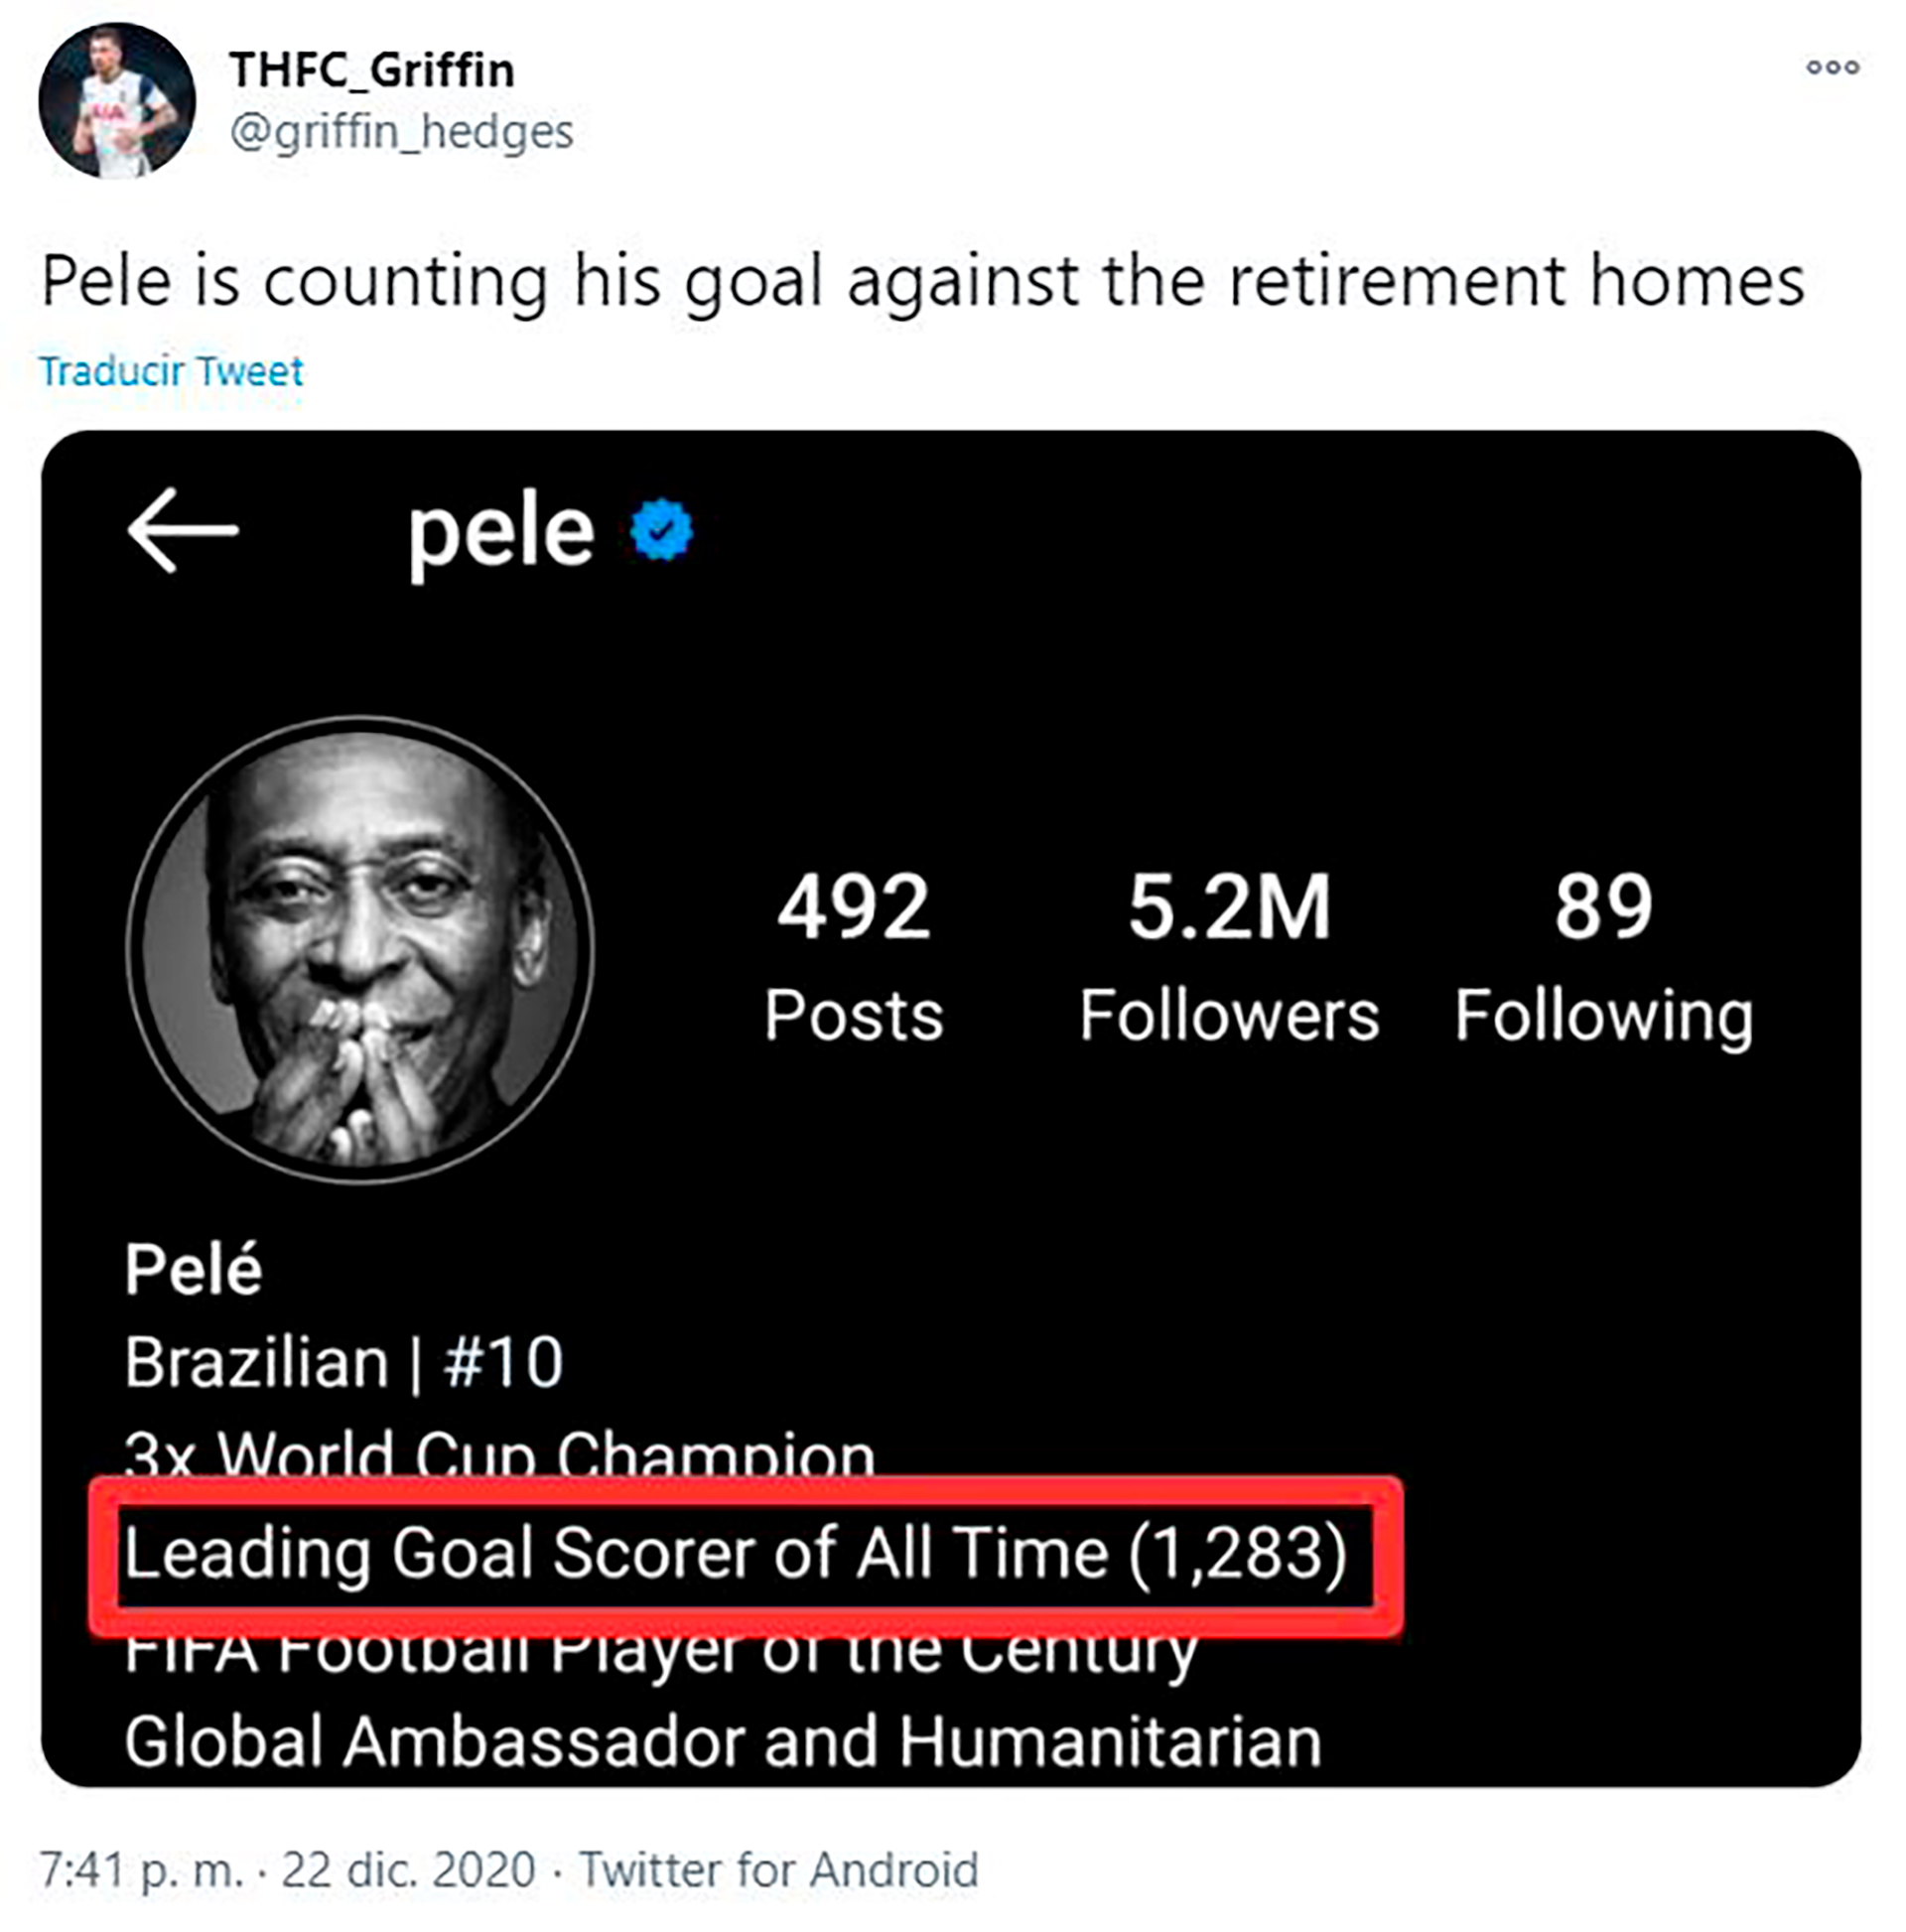 Otro fanático que apeló a la cuenta de Twitter de Pelé para burlarse. En ella dice que marcó 1.283 goles (claro, contando los marcados en los amistosos). "Pelé está contando los goles contra las casas de retiro", se burló el fan